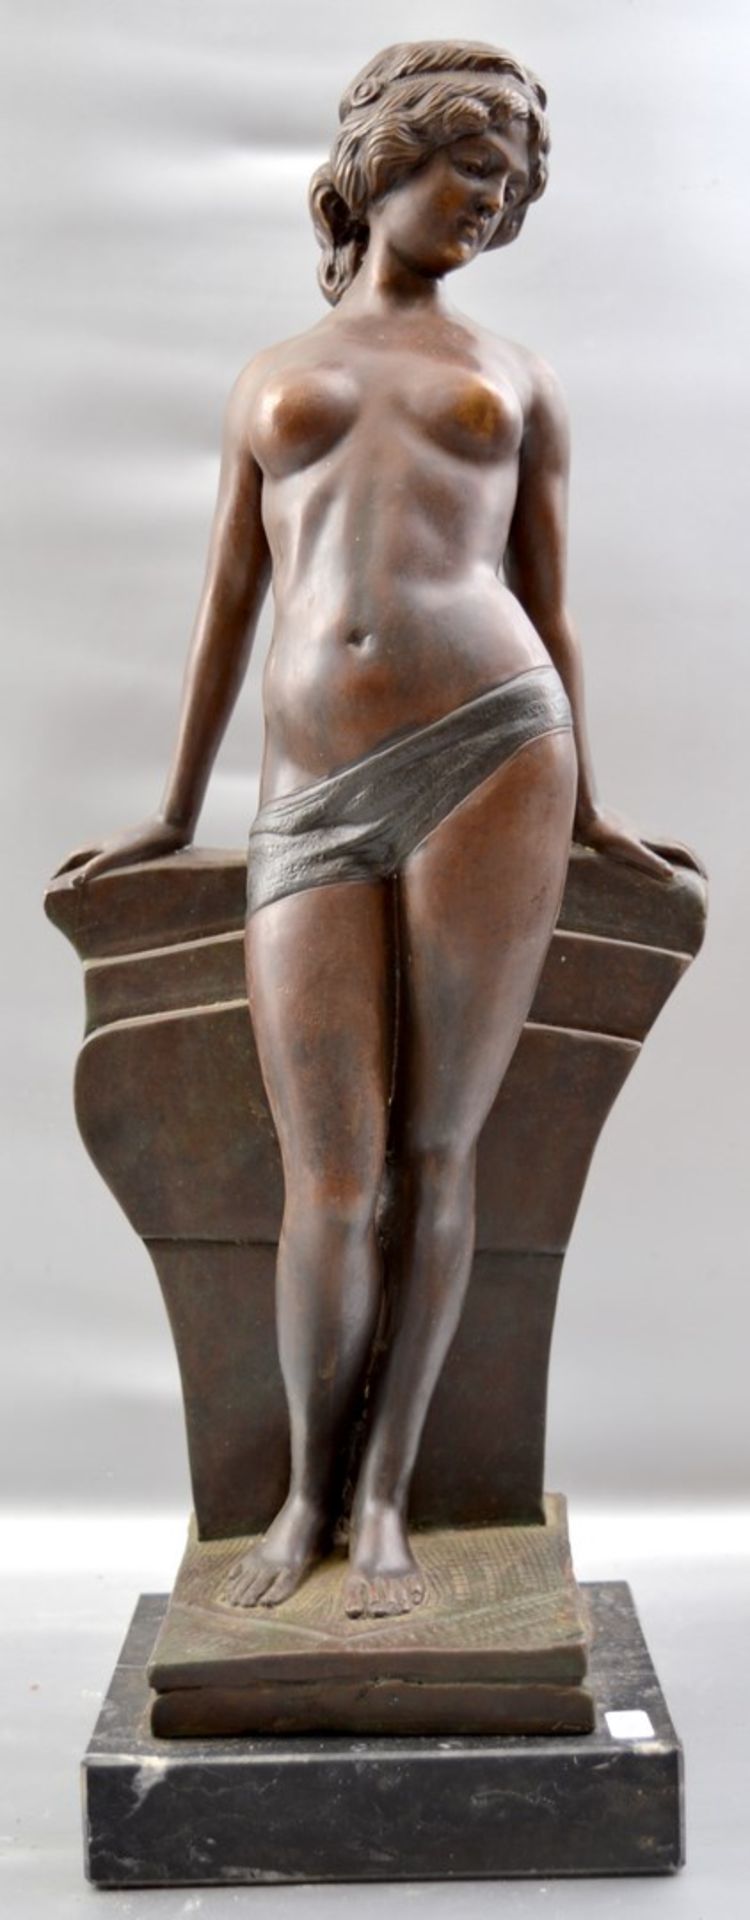 Stehender weiblicher Akt auf schwarz/grauem Marmorsockel stehend, Bronze patiniert, an Säule